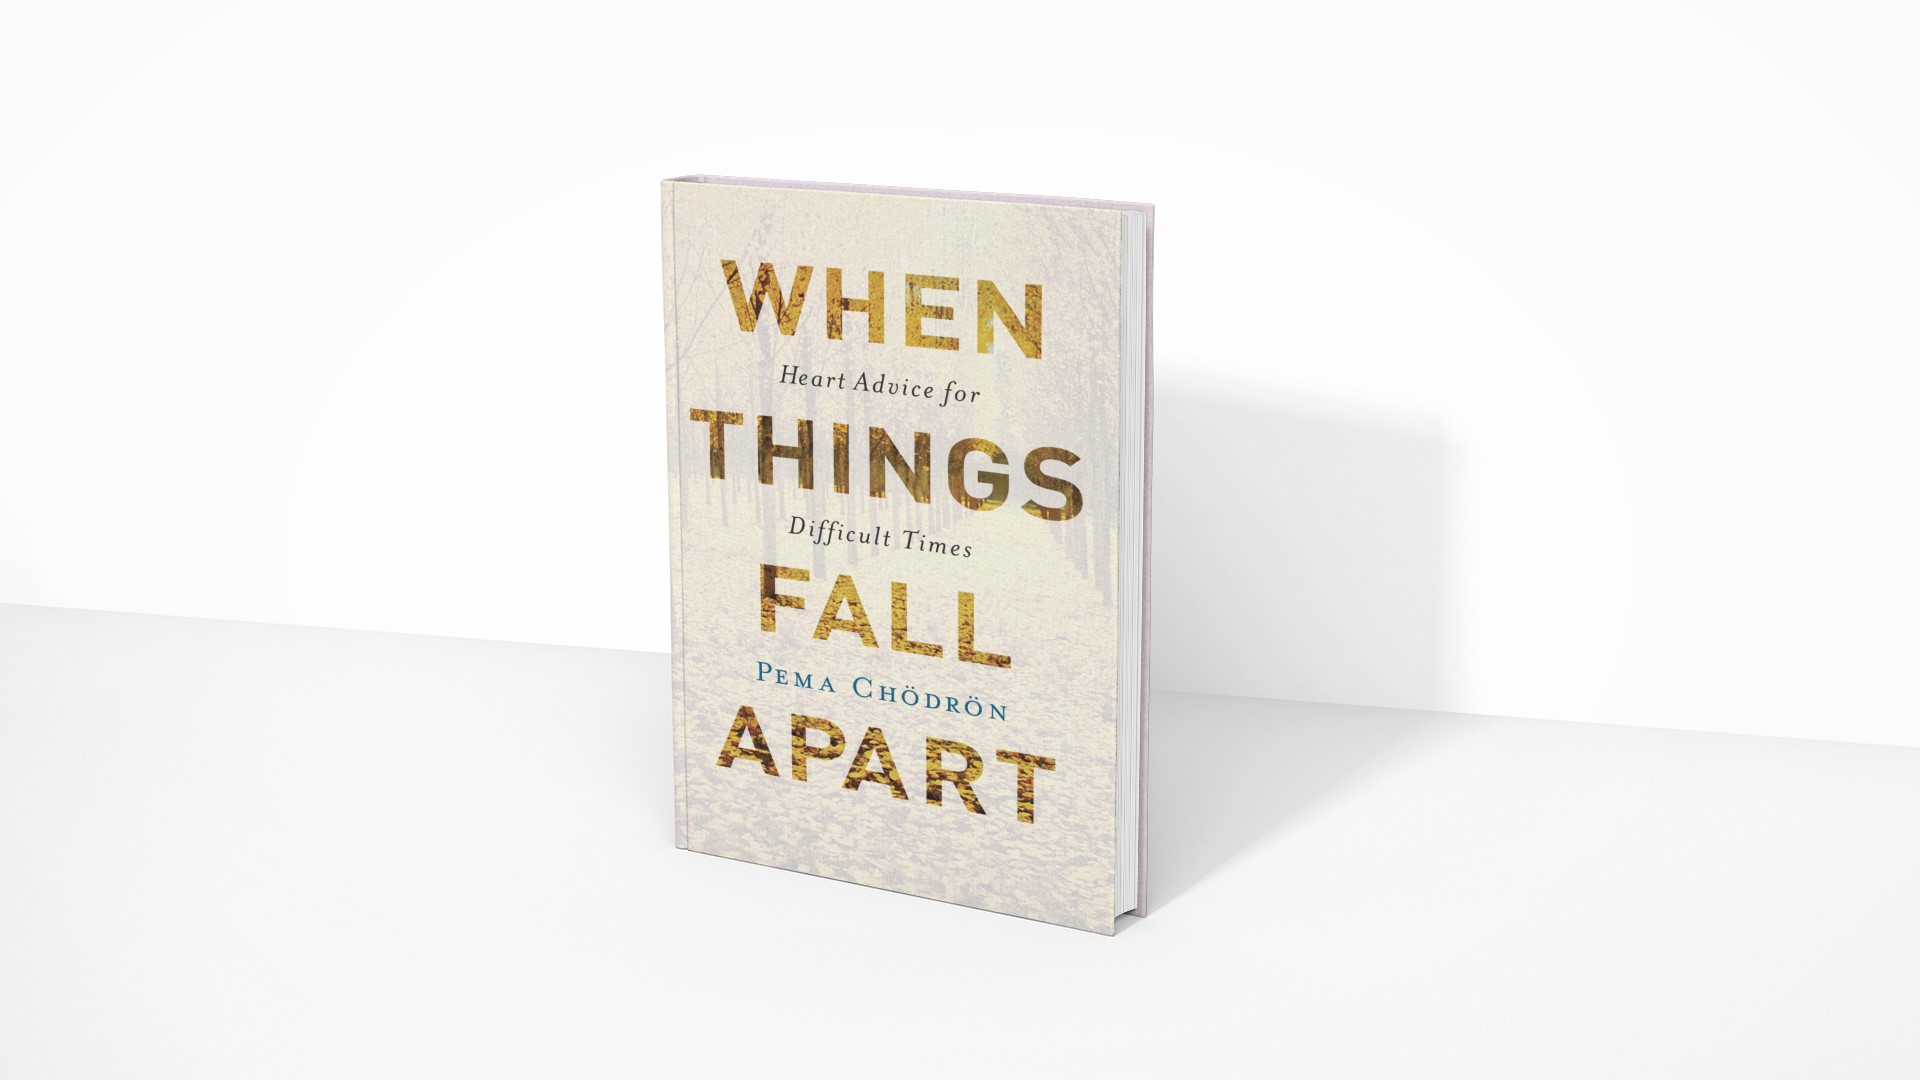 When Things Fall Apart - Pema Chödrön